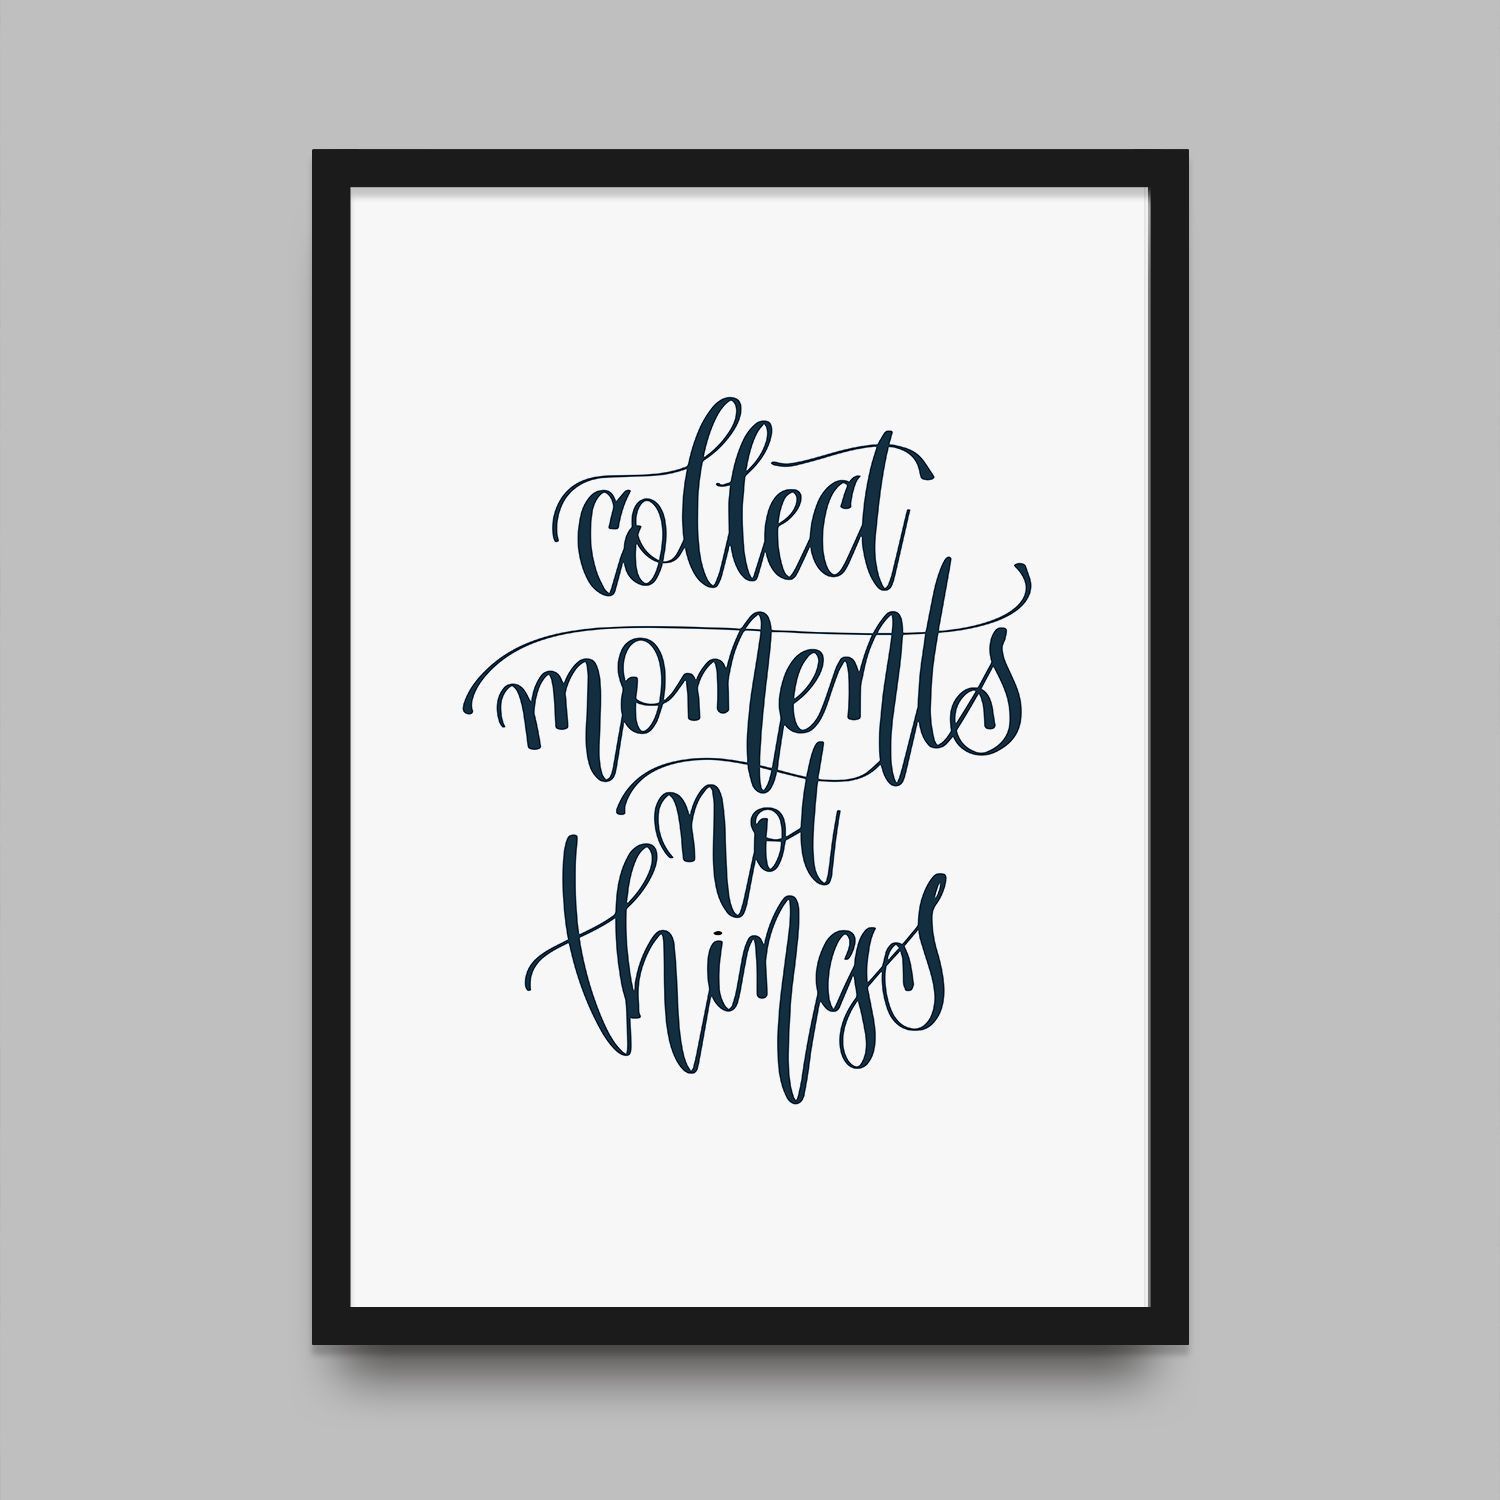 Постер "Collect Moments"